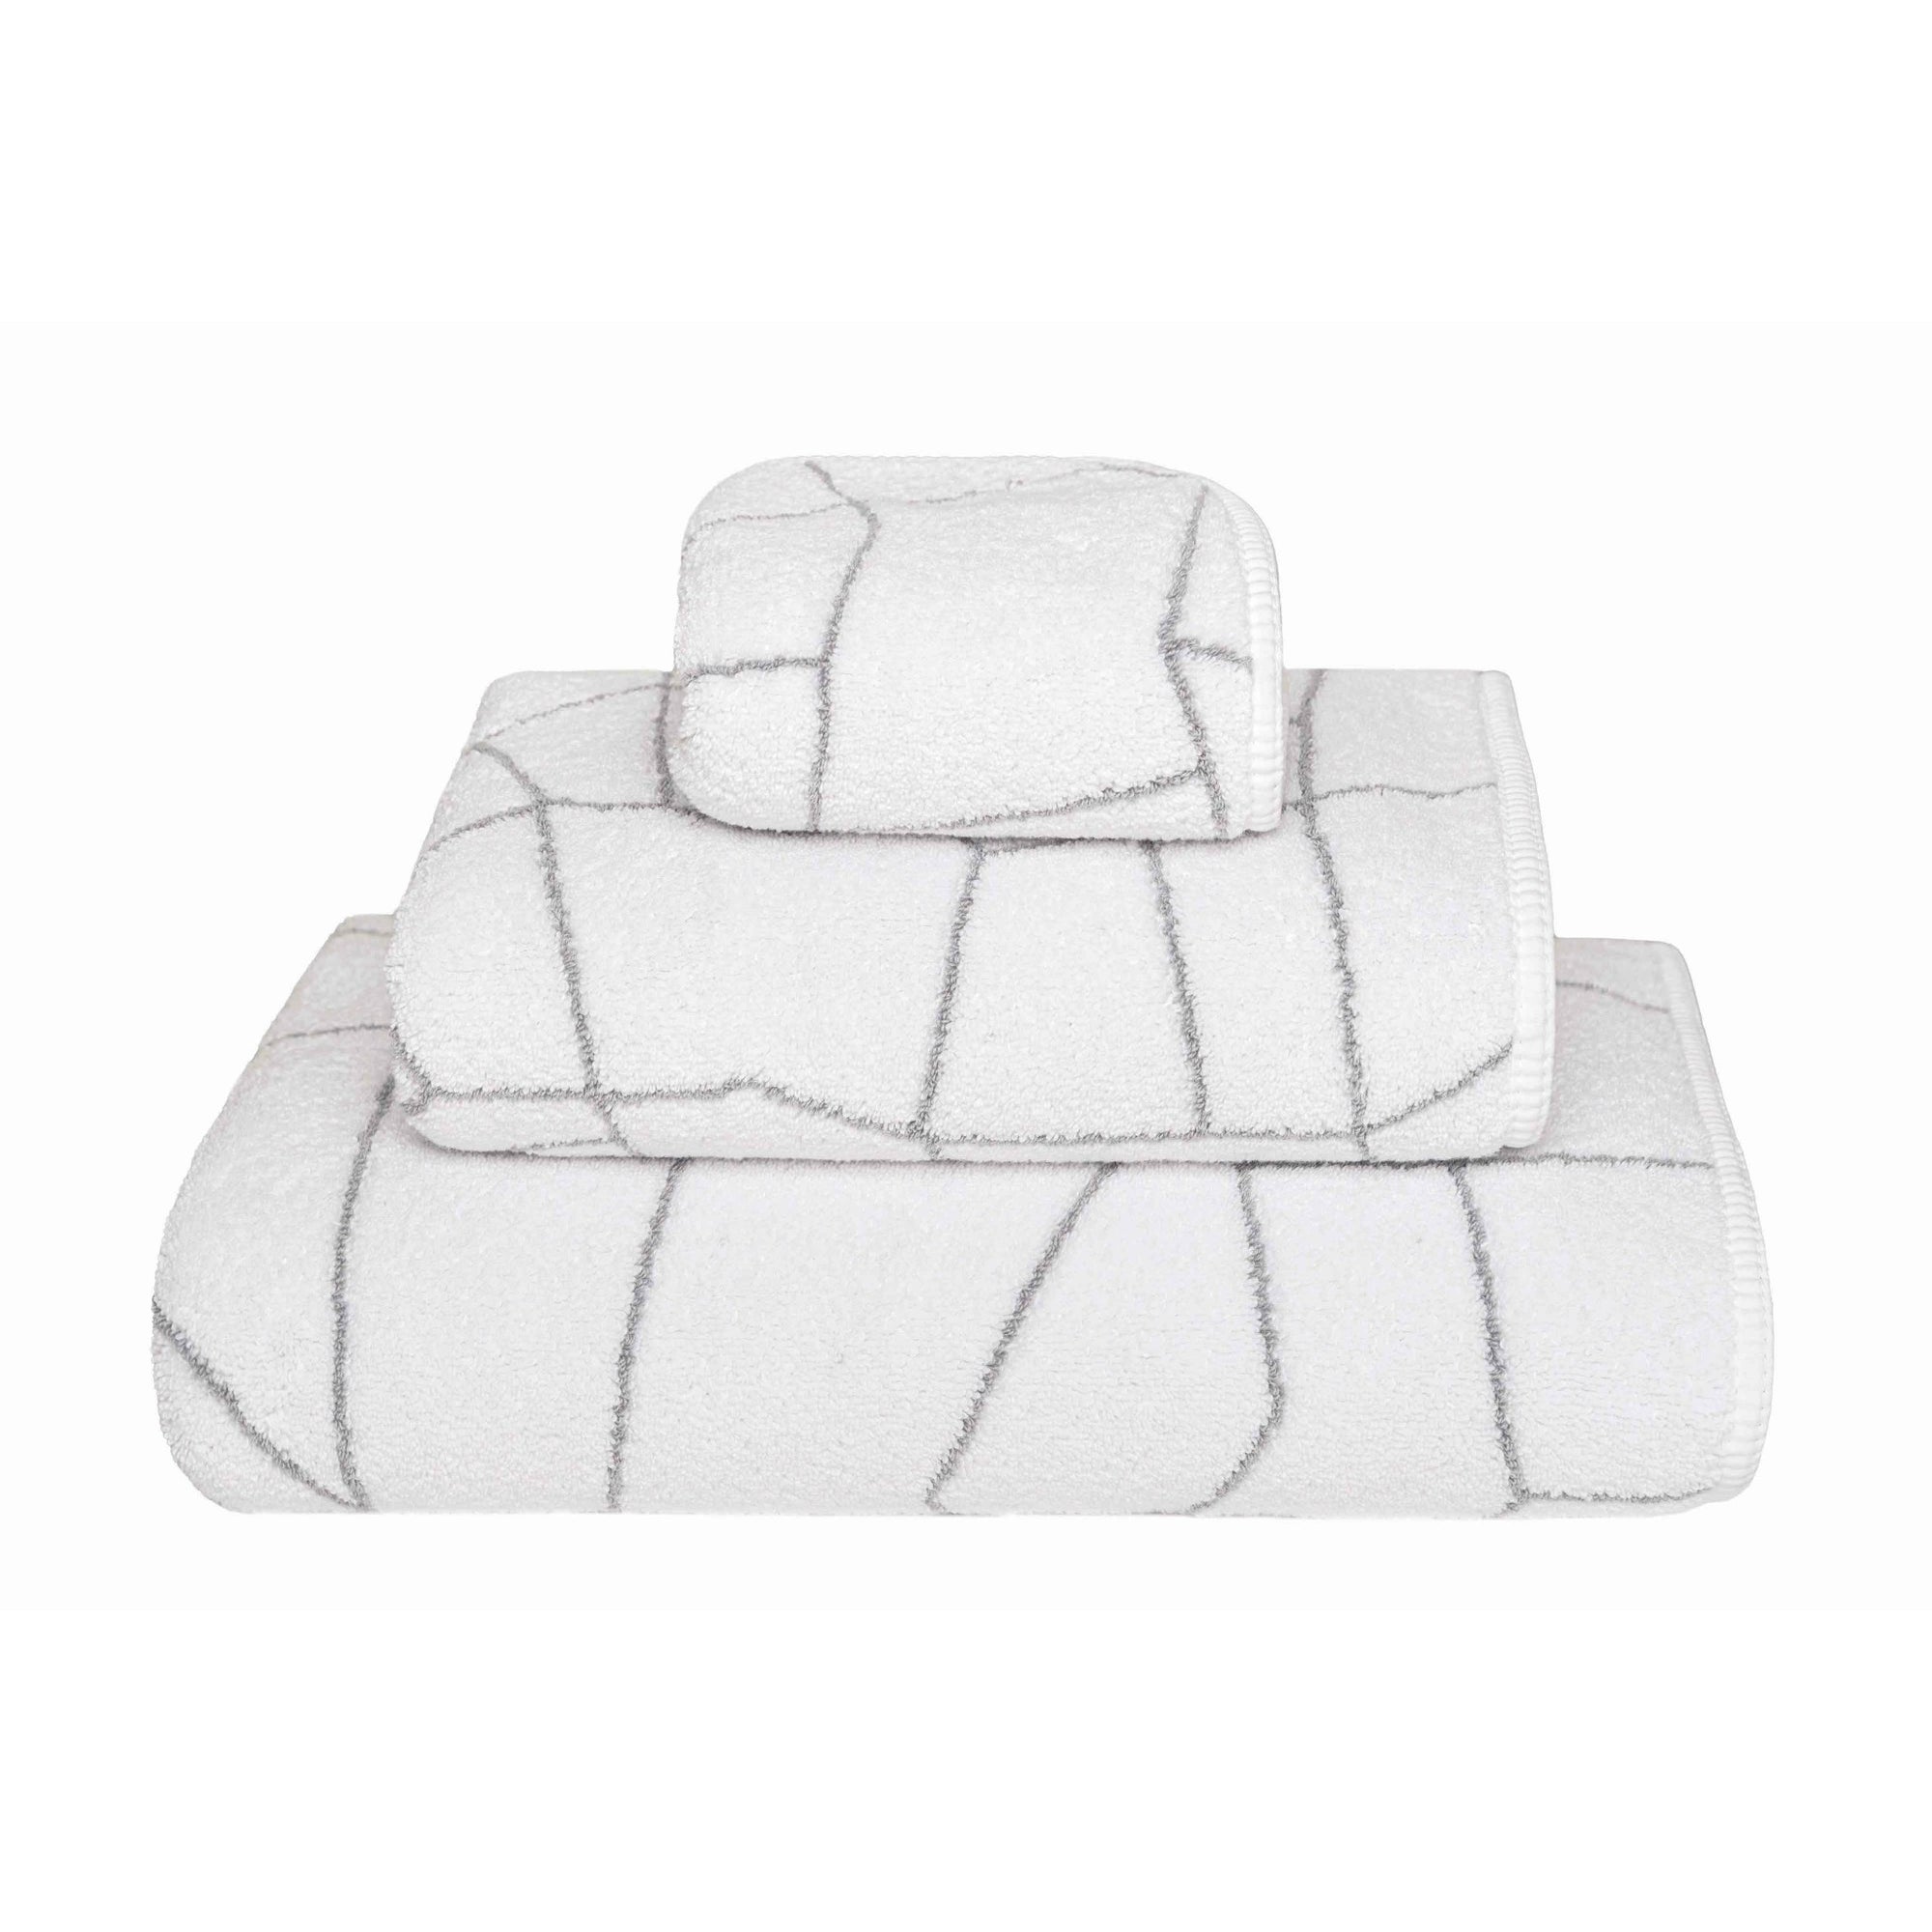 Graccioza Amalia Bath Towels and Rugs White/Silver Fine Linens